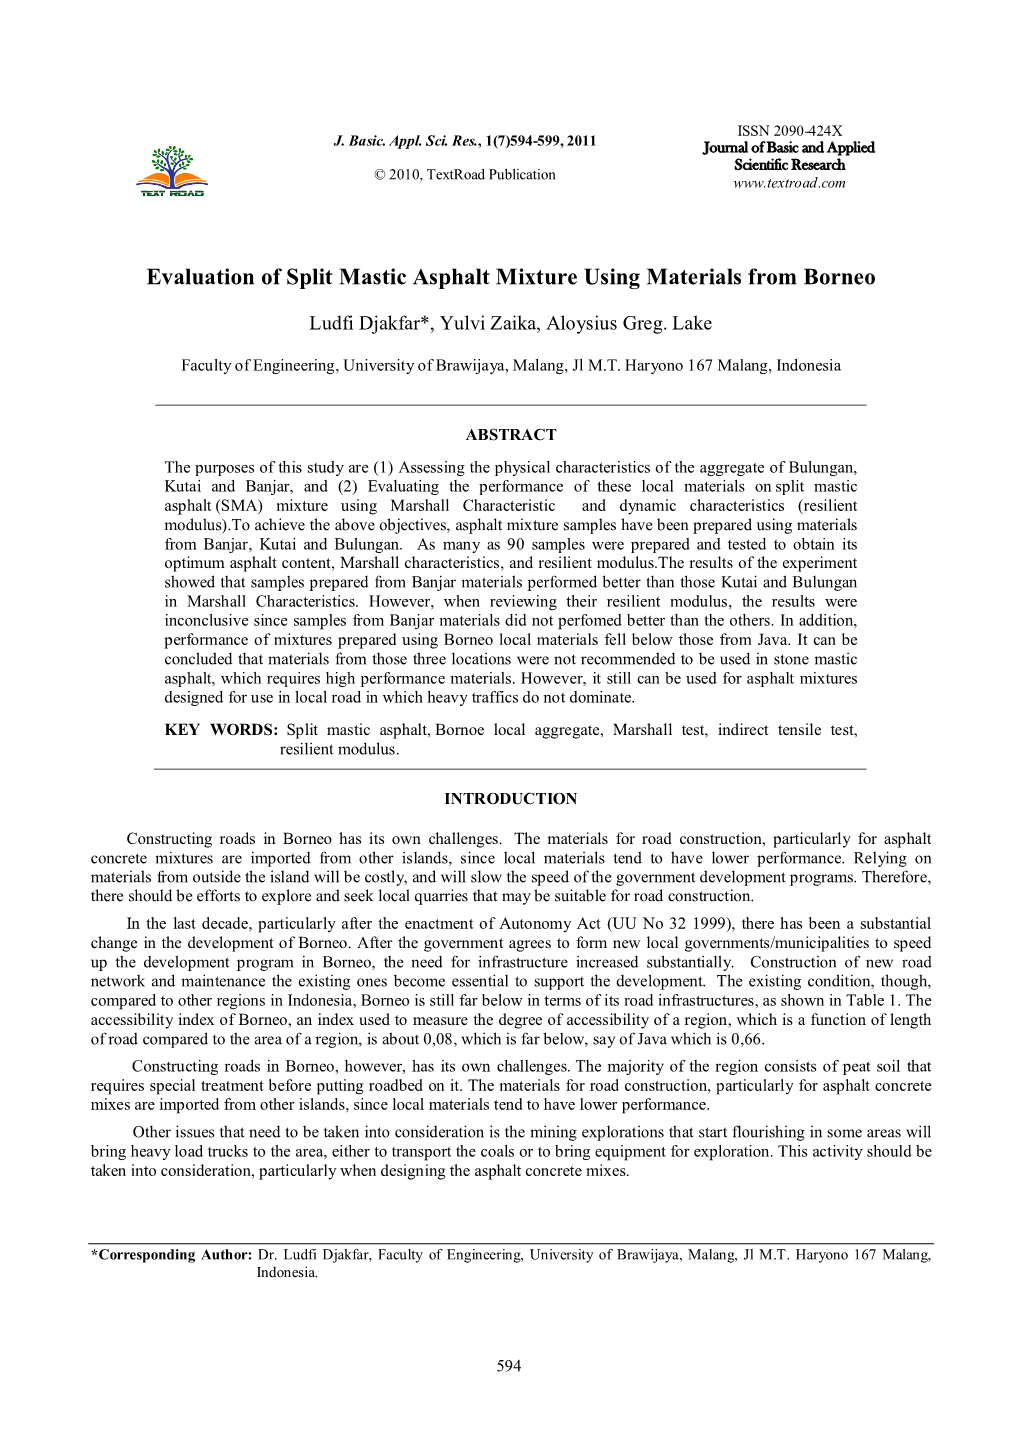 Evaluation of Split Mastic Asphalt Mixture Using Materials from Borneo